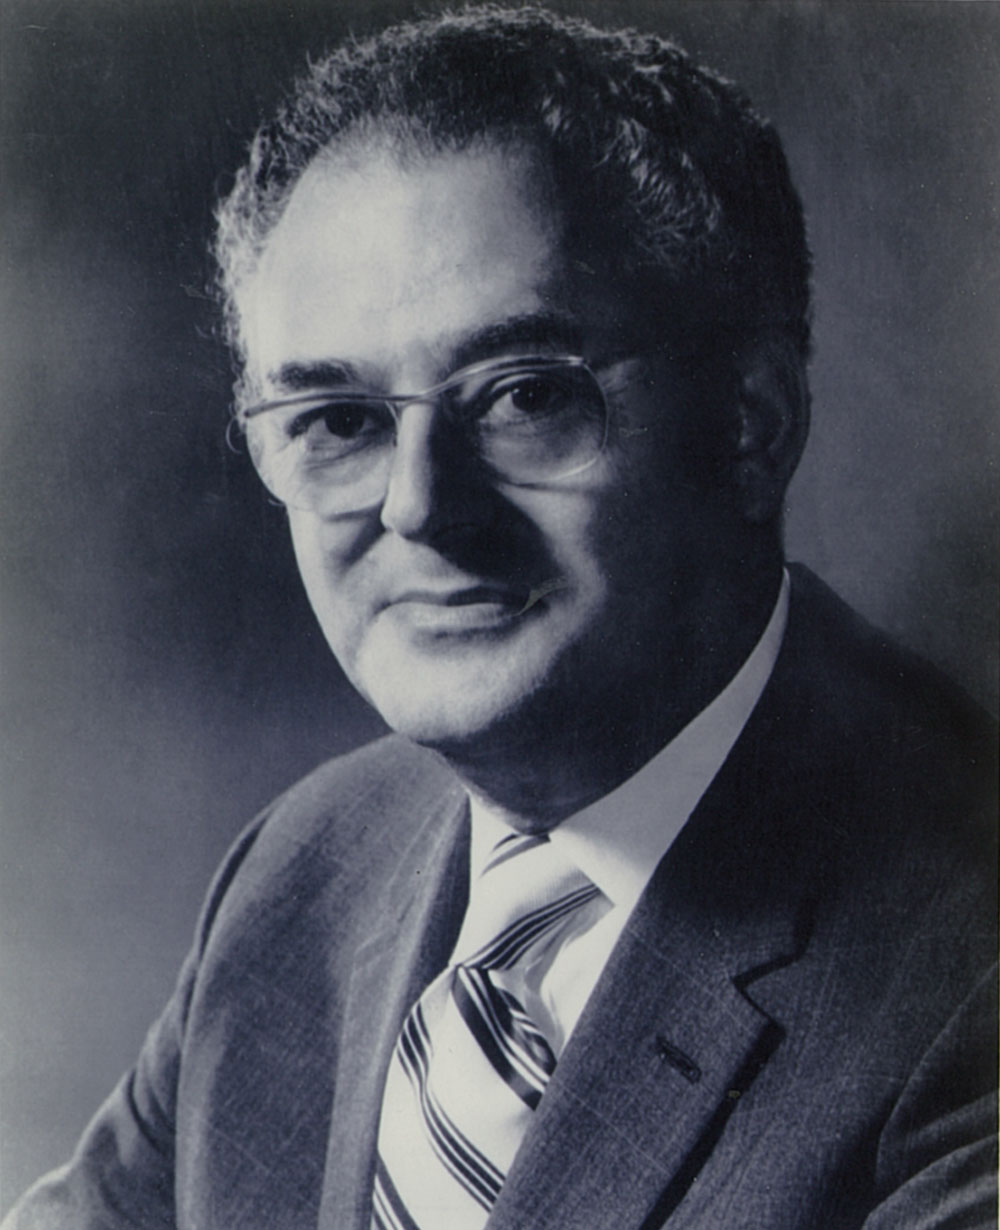 Kalman B. Druck, PRSA President of 1972